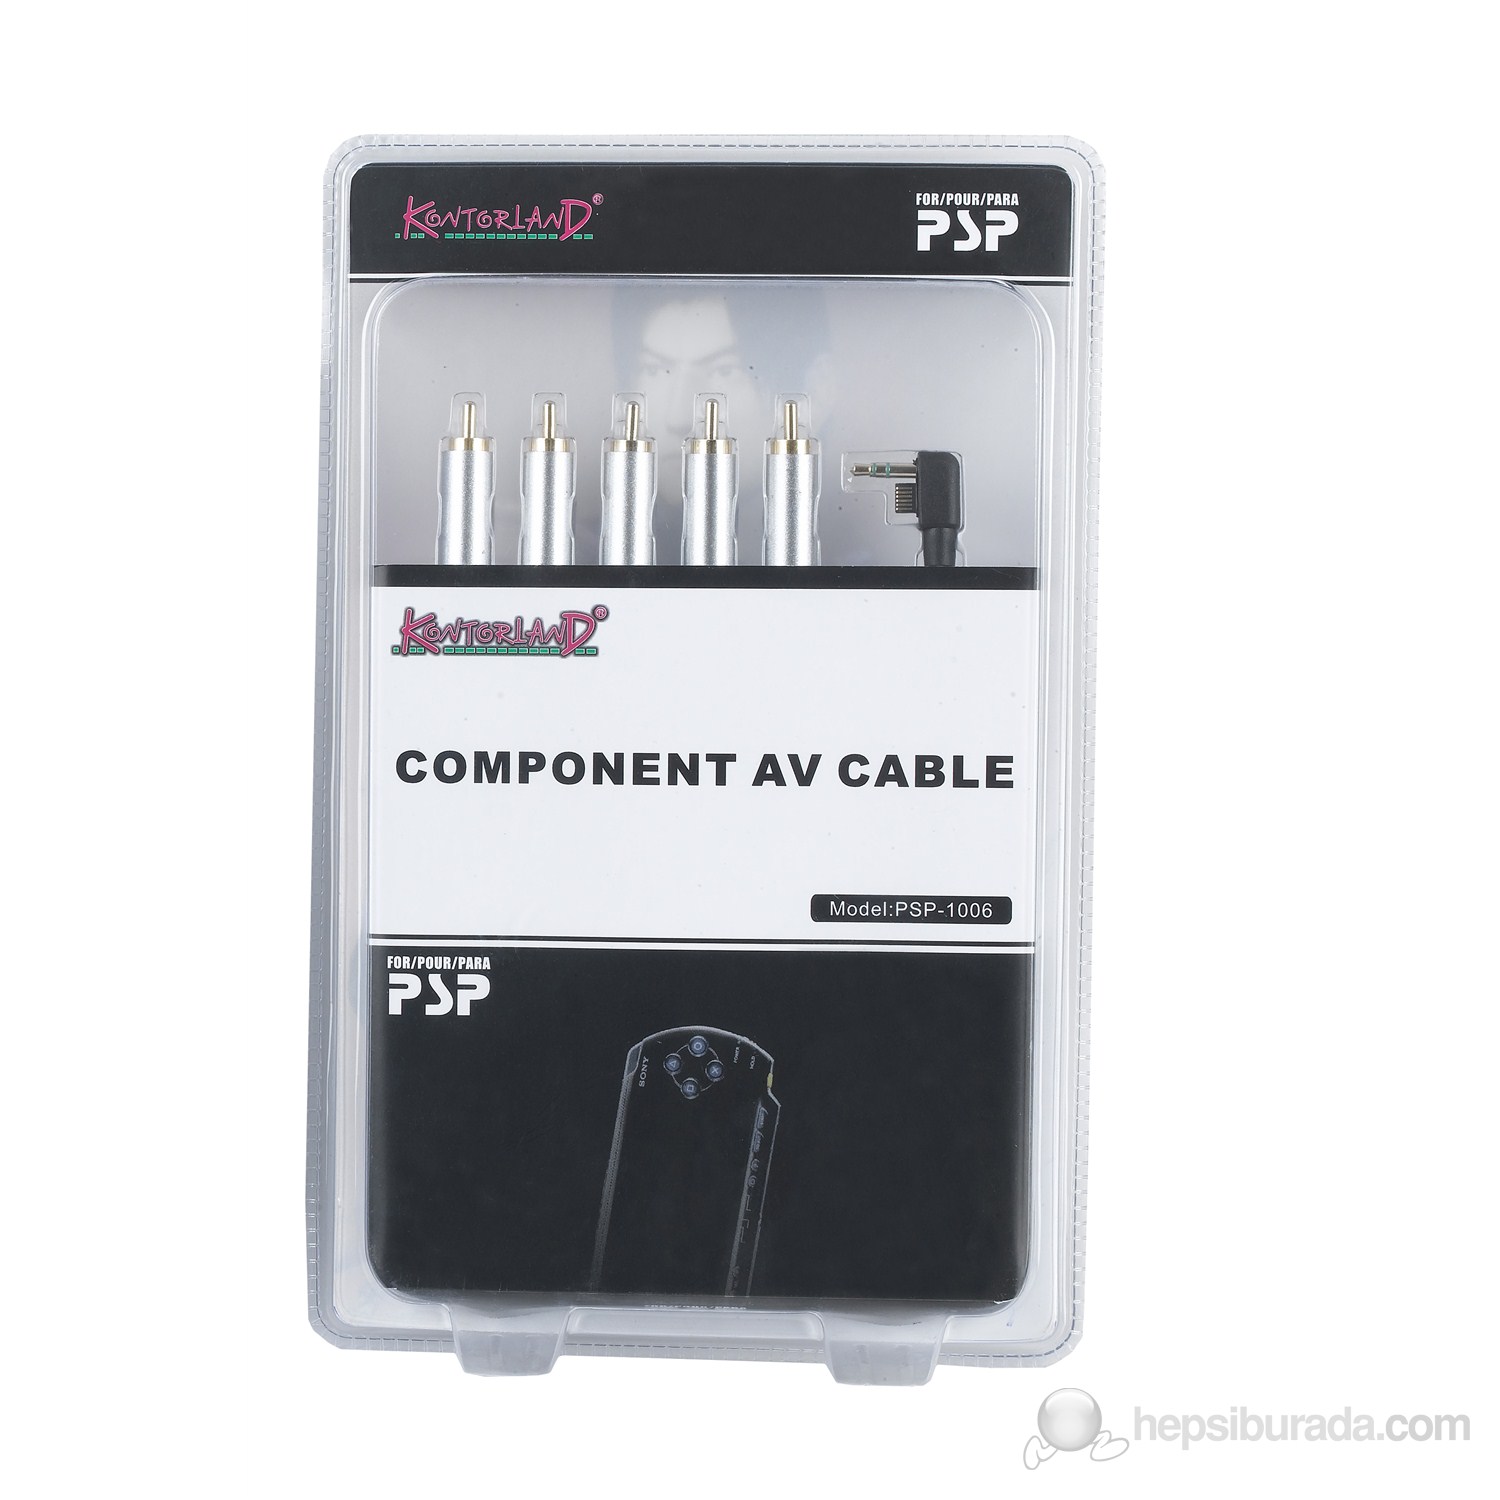 Kontorland PSP Component AV Cable